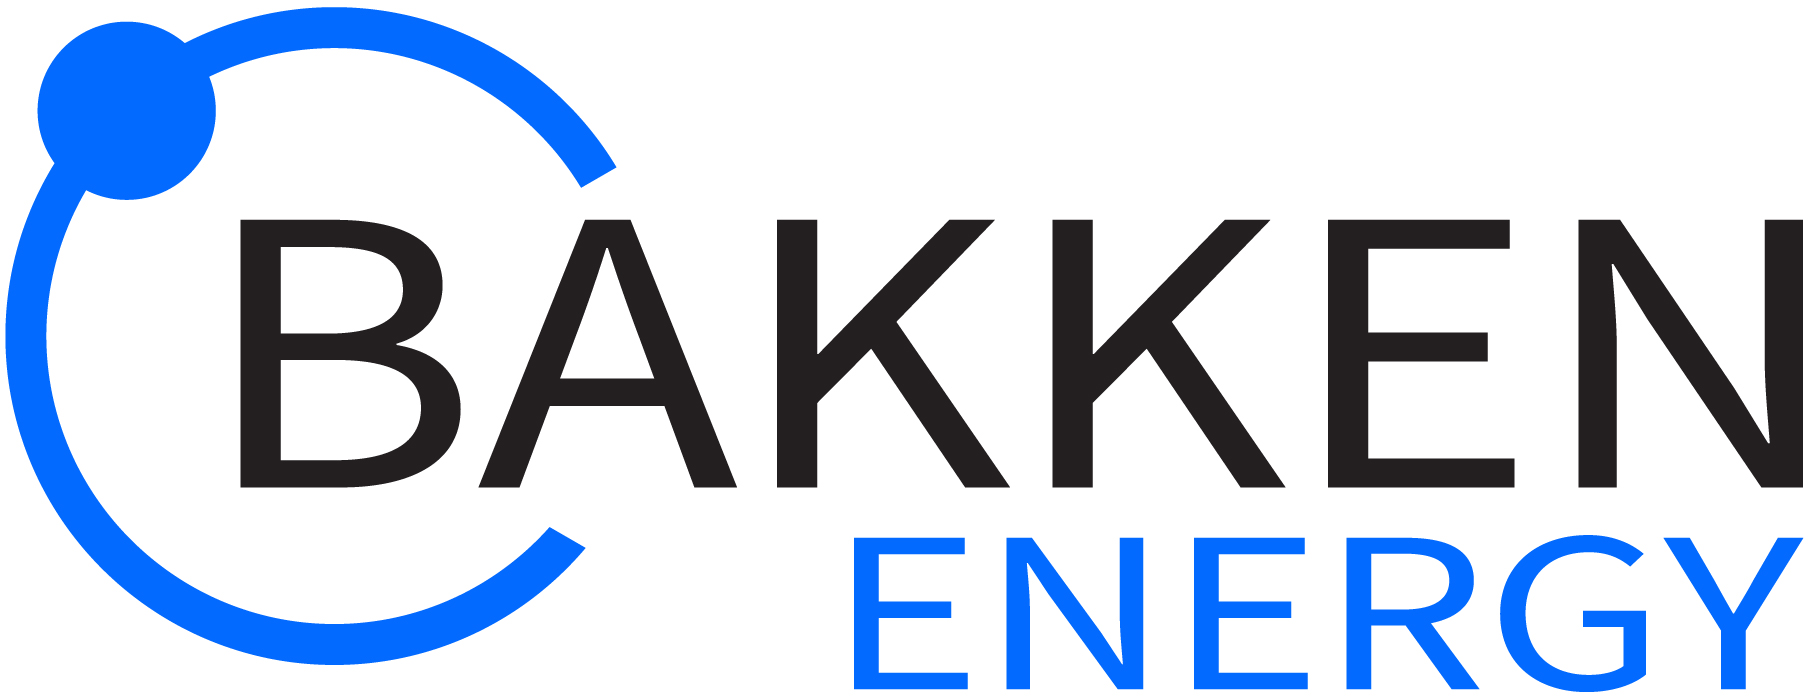 bakken-energy-1800_2.jpg